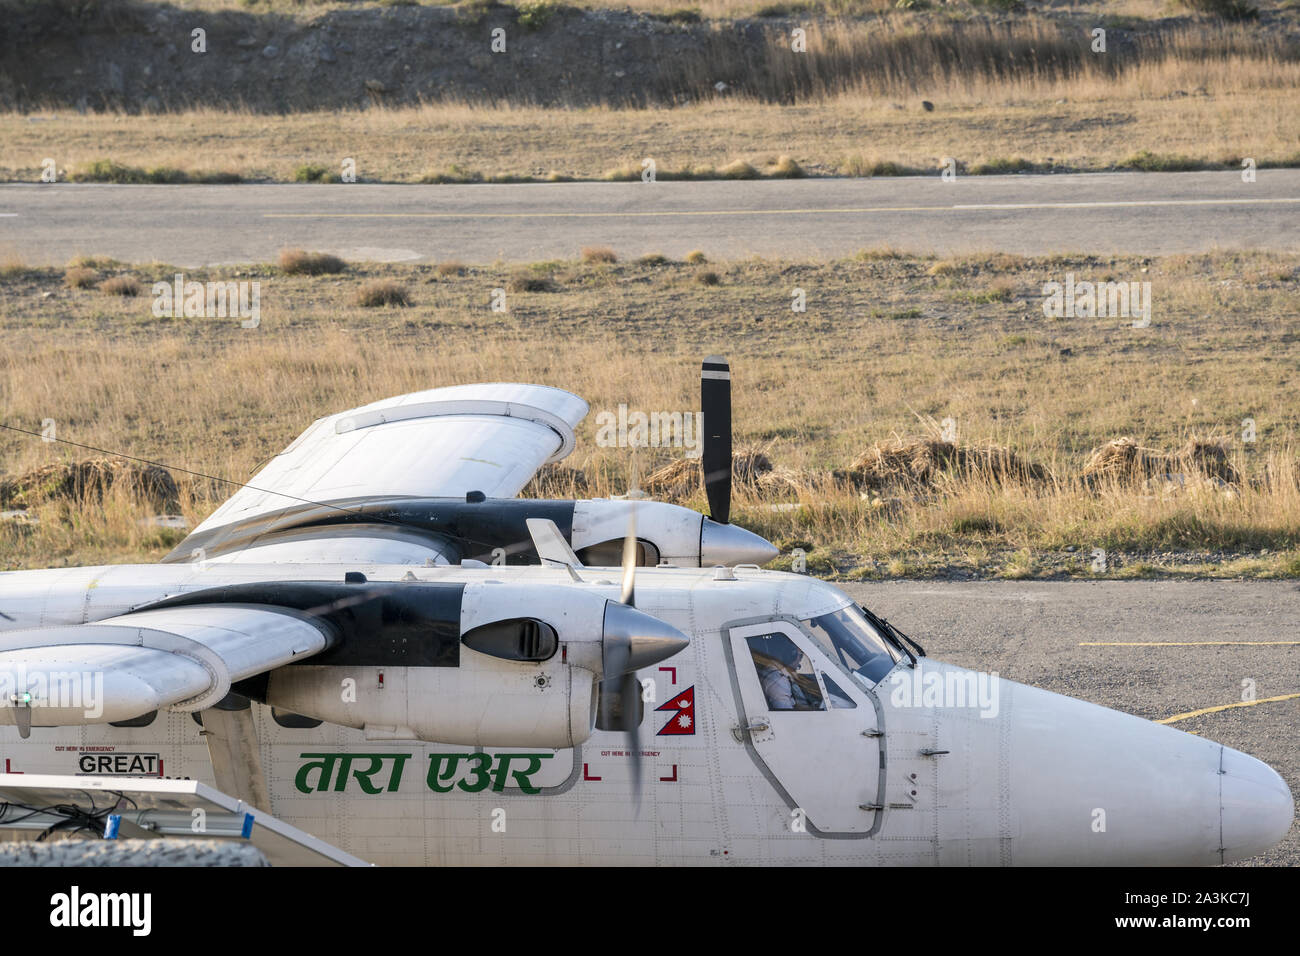 Aircraft of Tara Air at Jomsom airport, Lower Mustang, Nepal Stock Photo